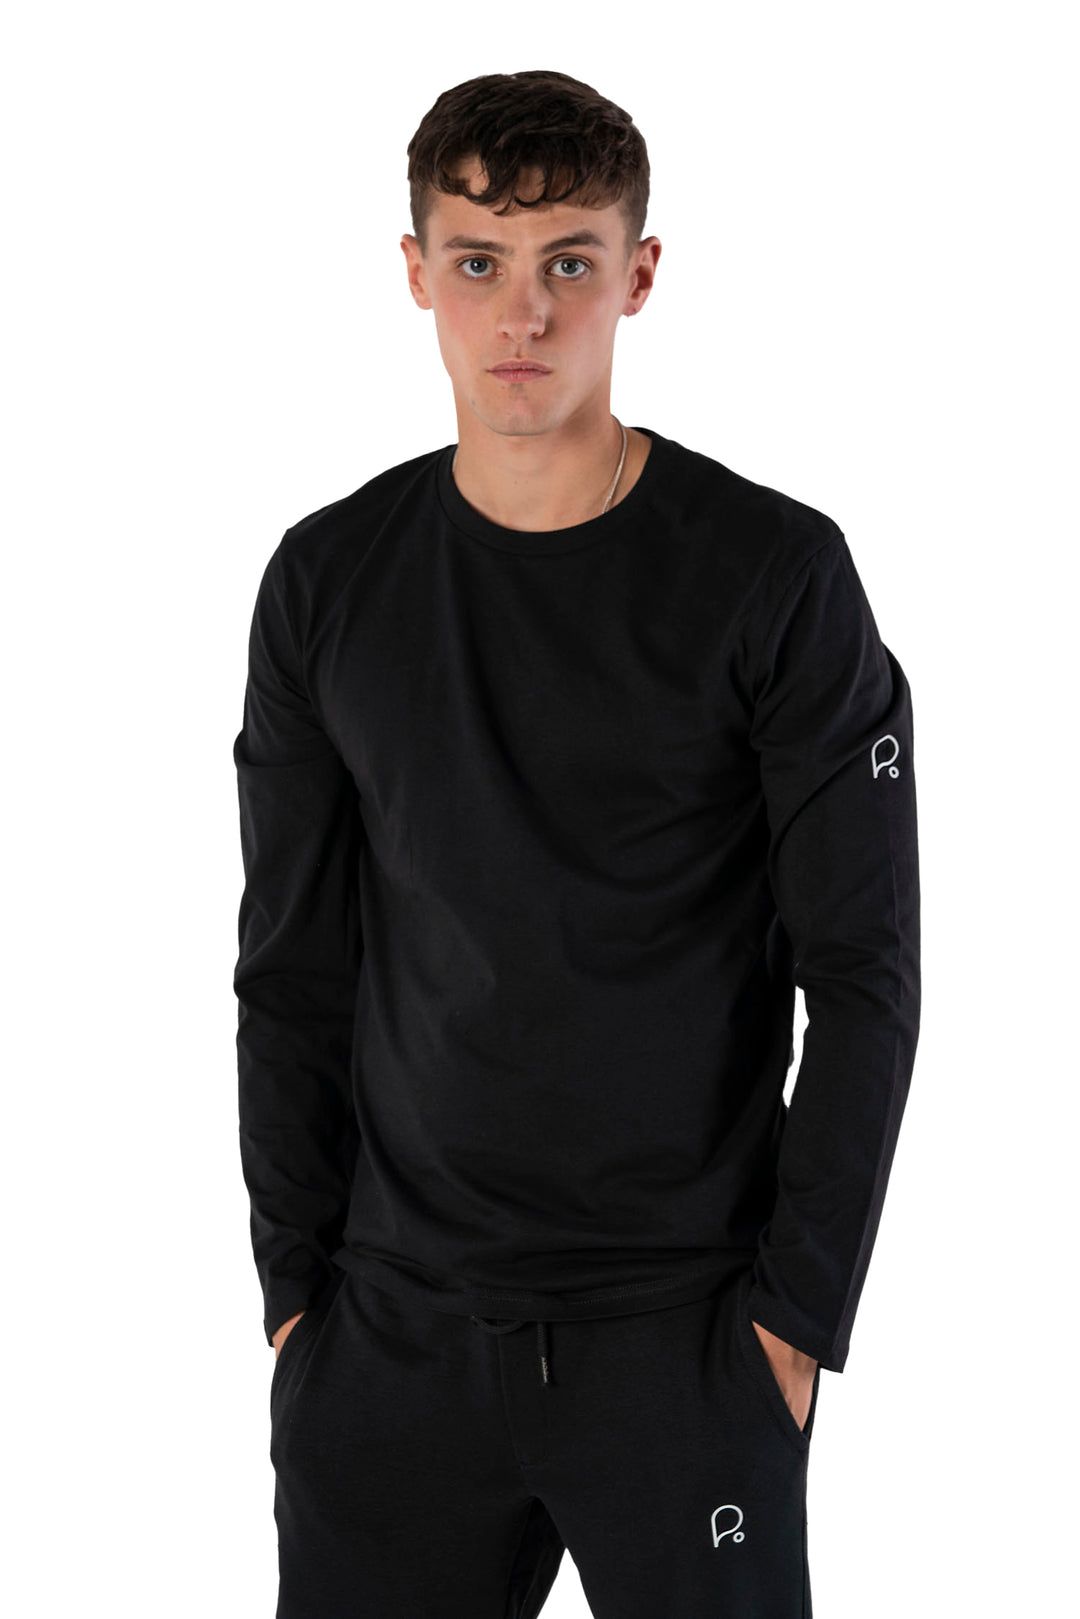 Signature Black Long Sleeve T-shirt-Men T-shirts-PIRKANI